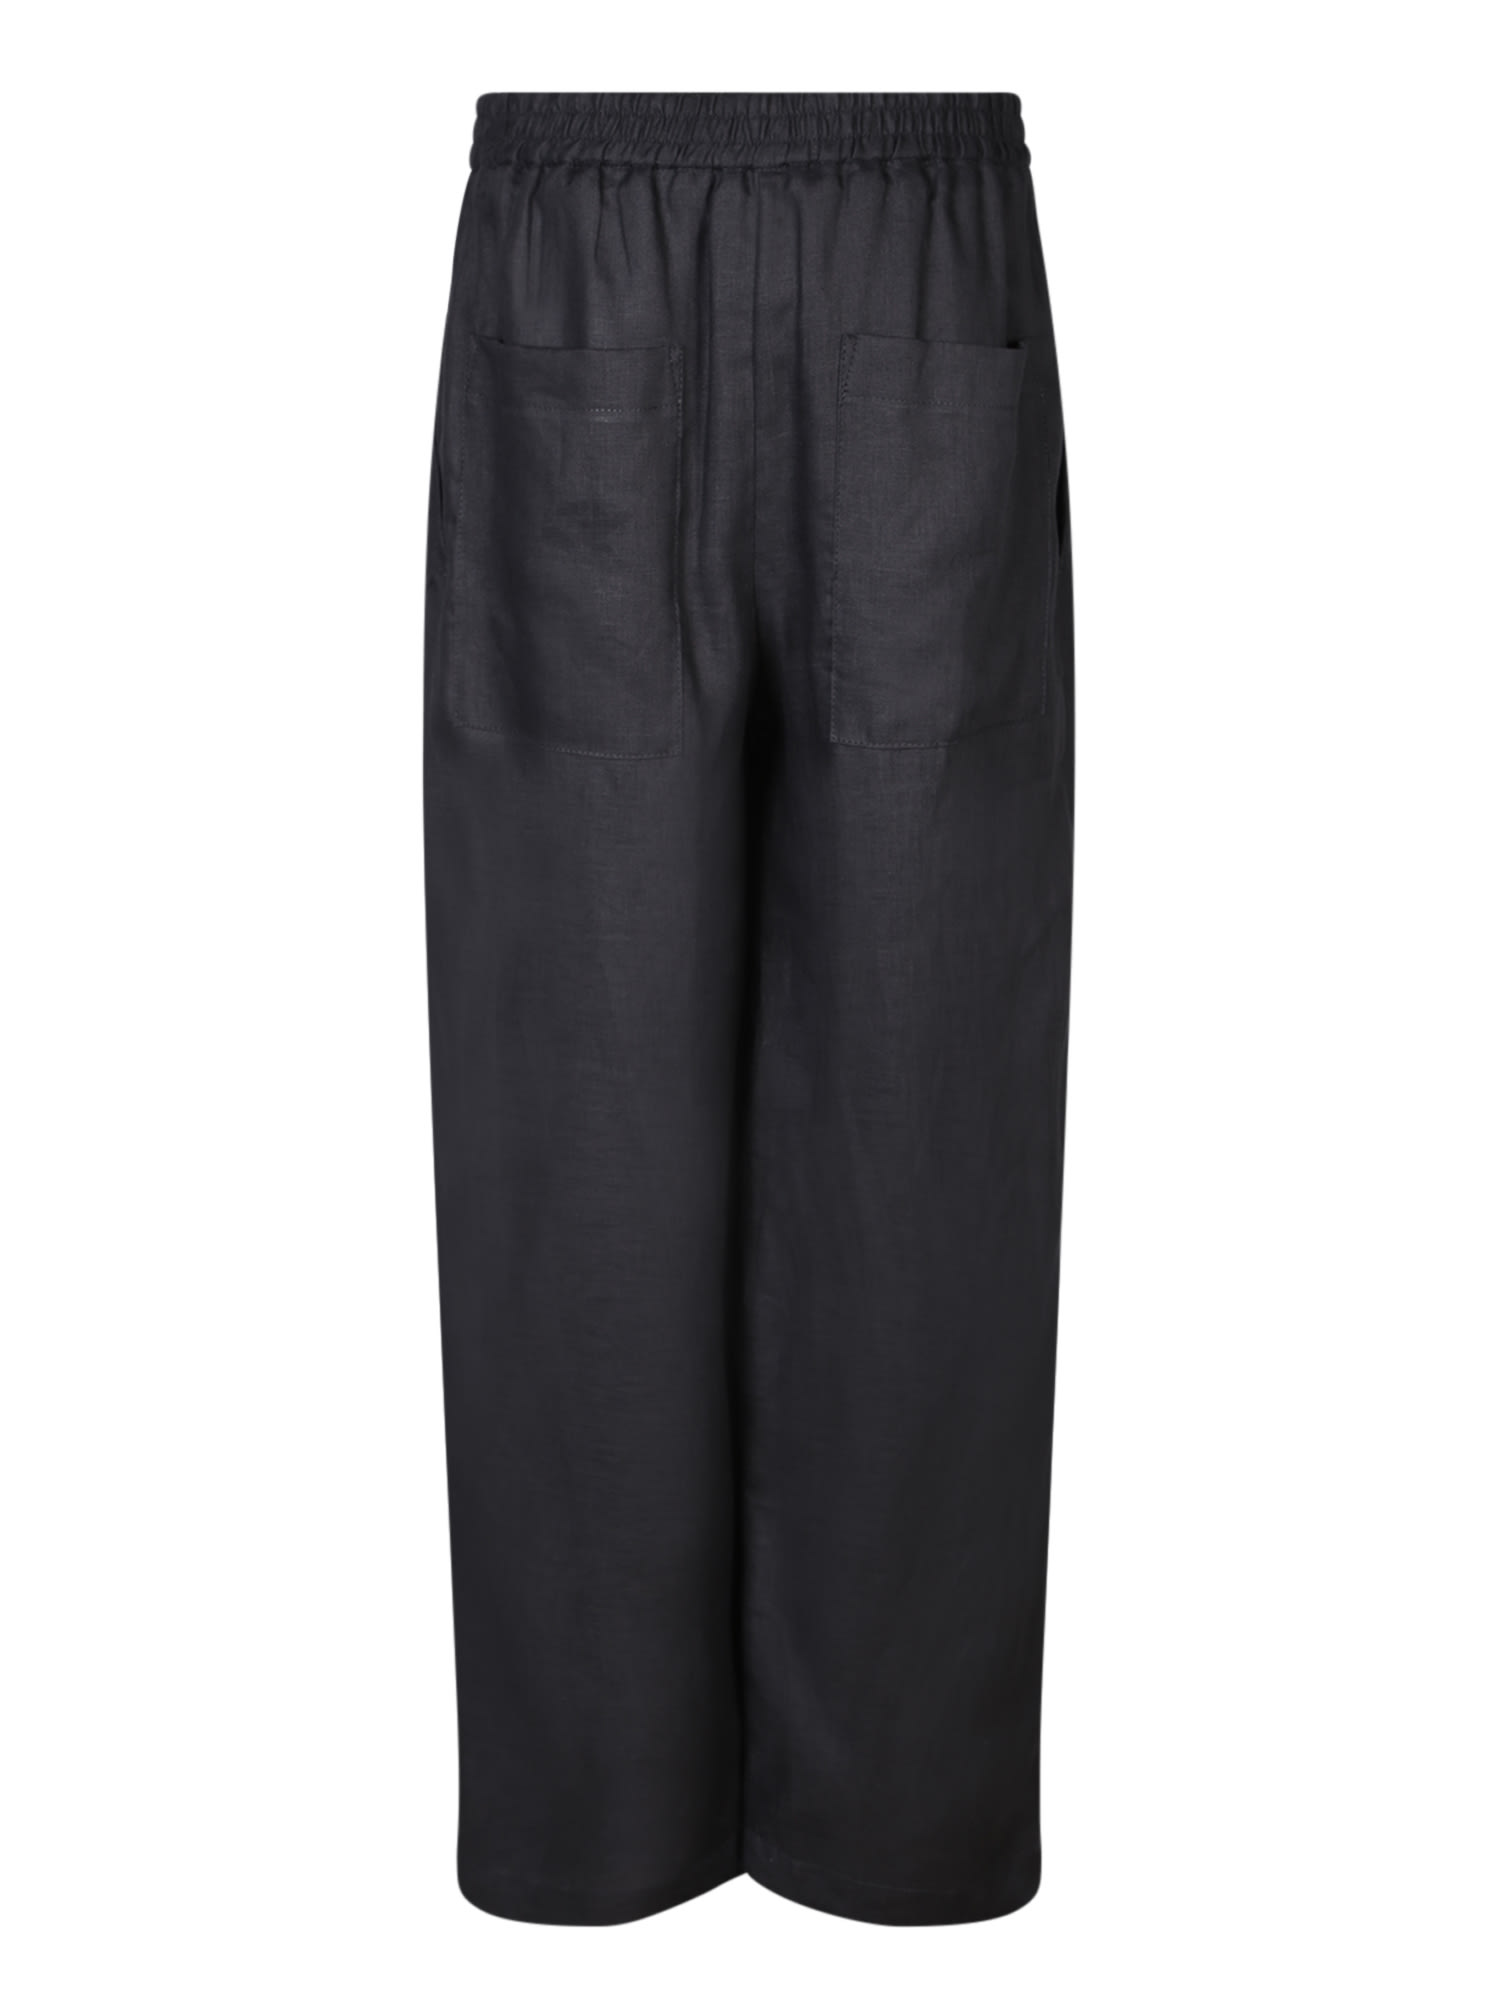 Shop Lardini Black Linen Trousers